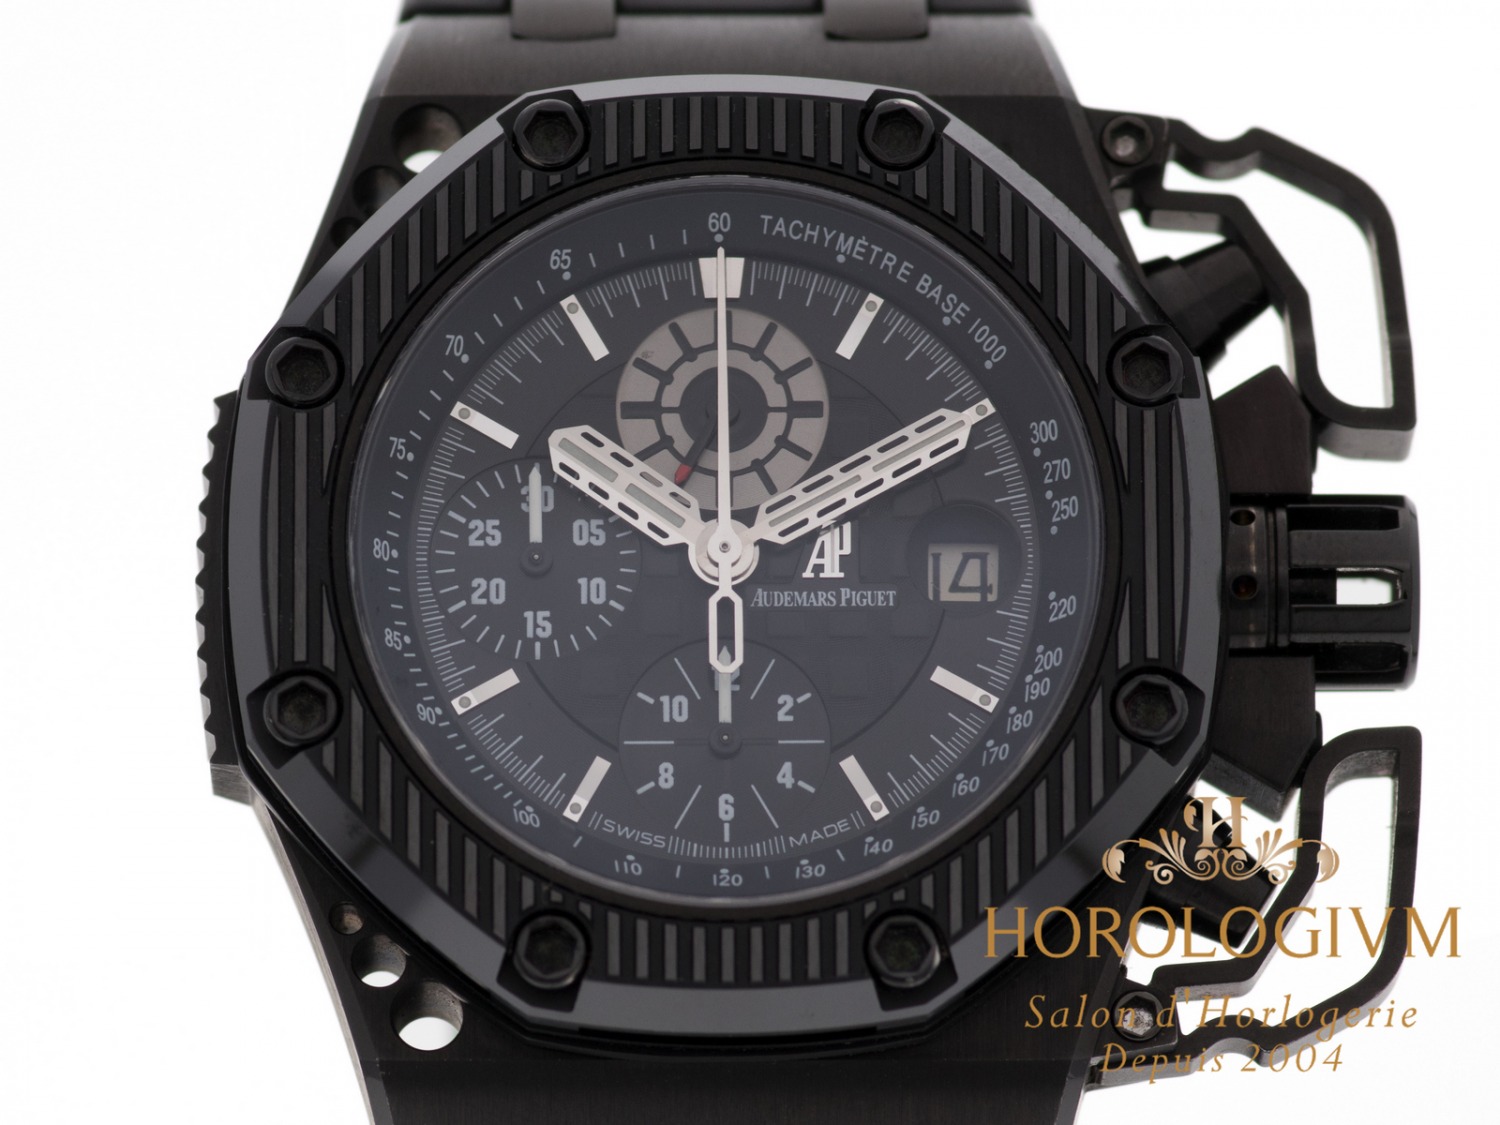 Audemars Piguet Royal Oak Offshore Survivor Limited 1000 pcs Ref. 26165IO.OO.A002CA.01 watch, black